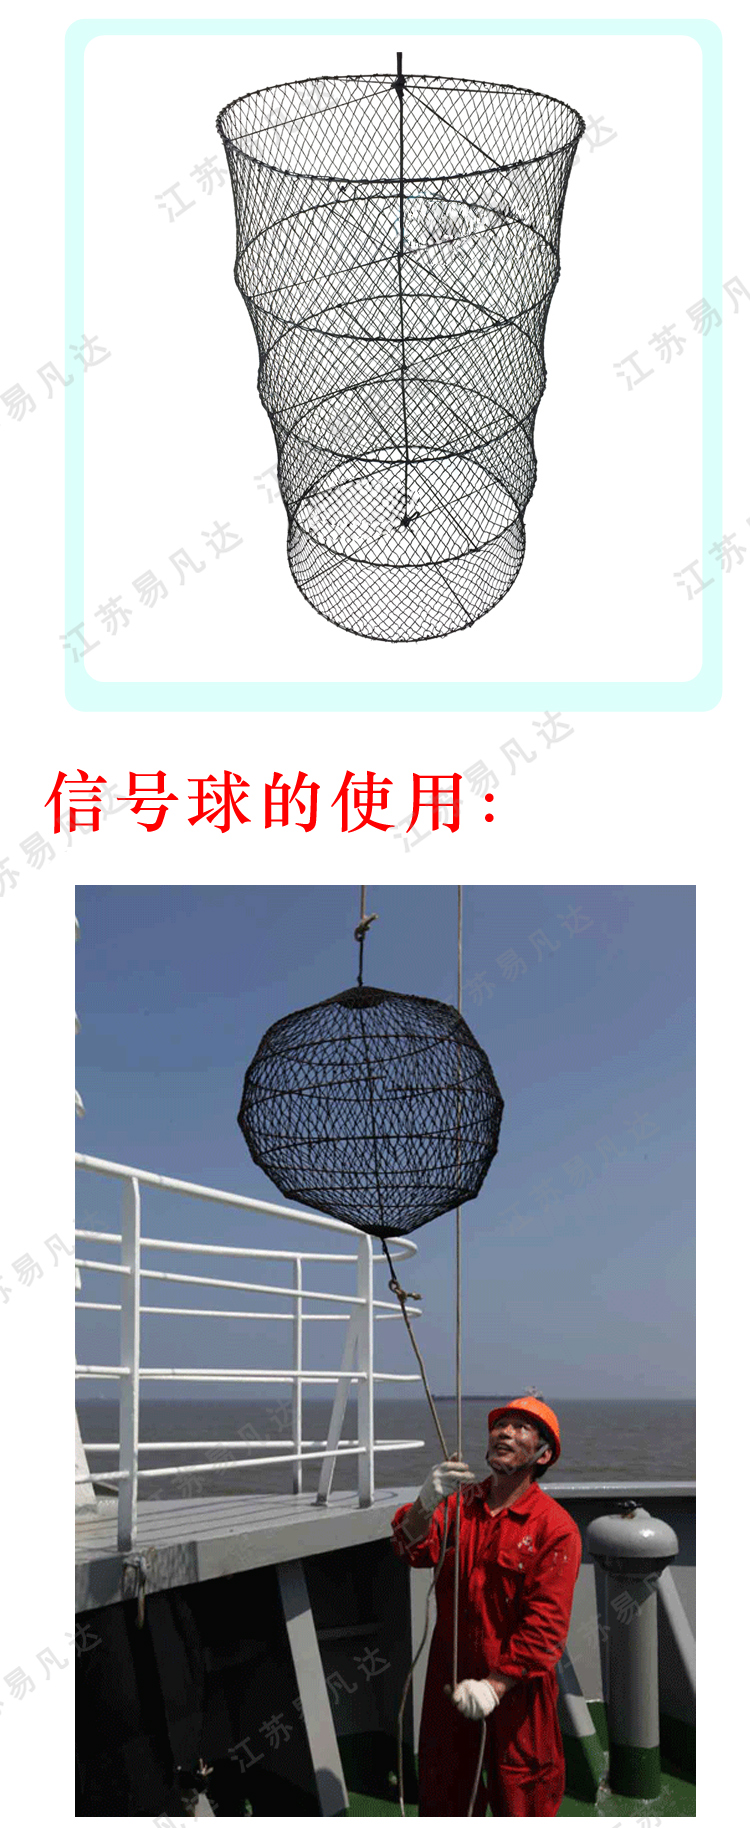 船用信号球、IMPA370581白昼信号球、菱形圆柱球型黑球锚球船用网状信号球